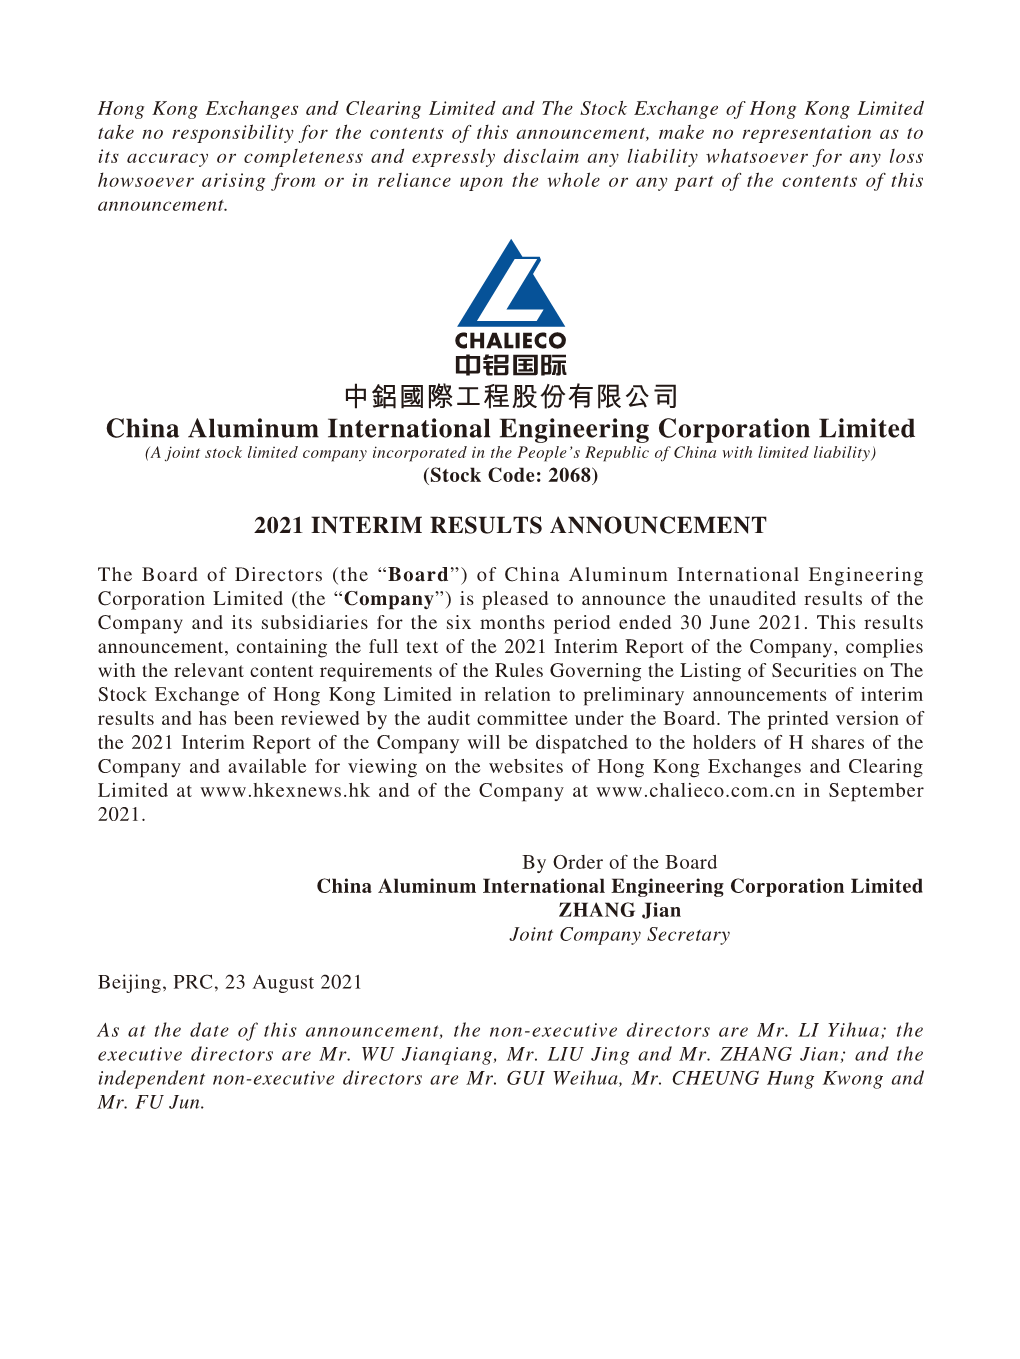 中鋁國際工程股份有限公司 China Aluminum